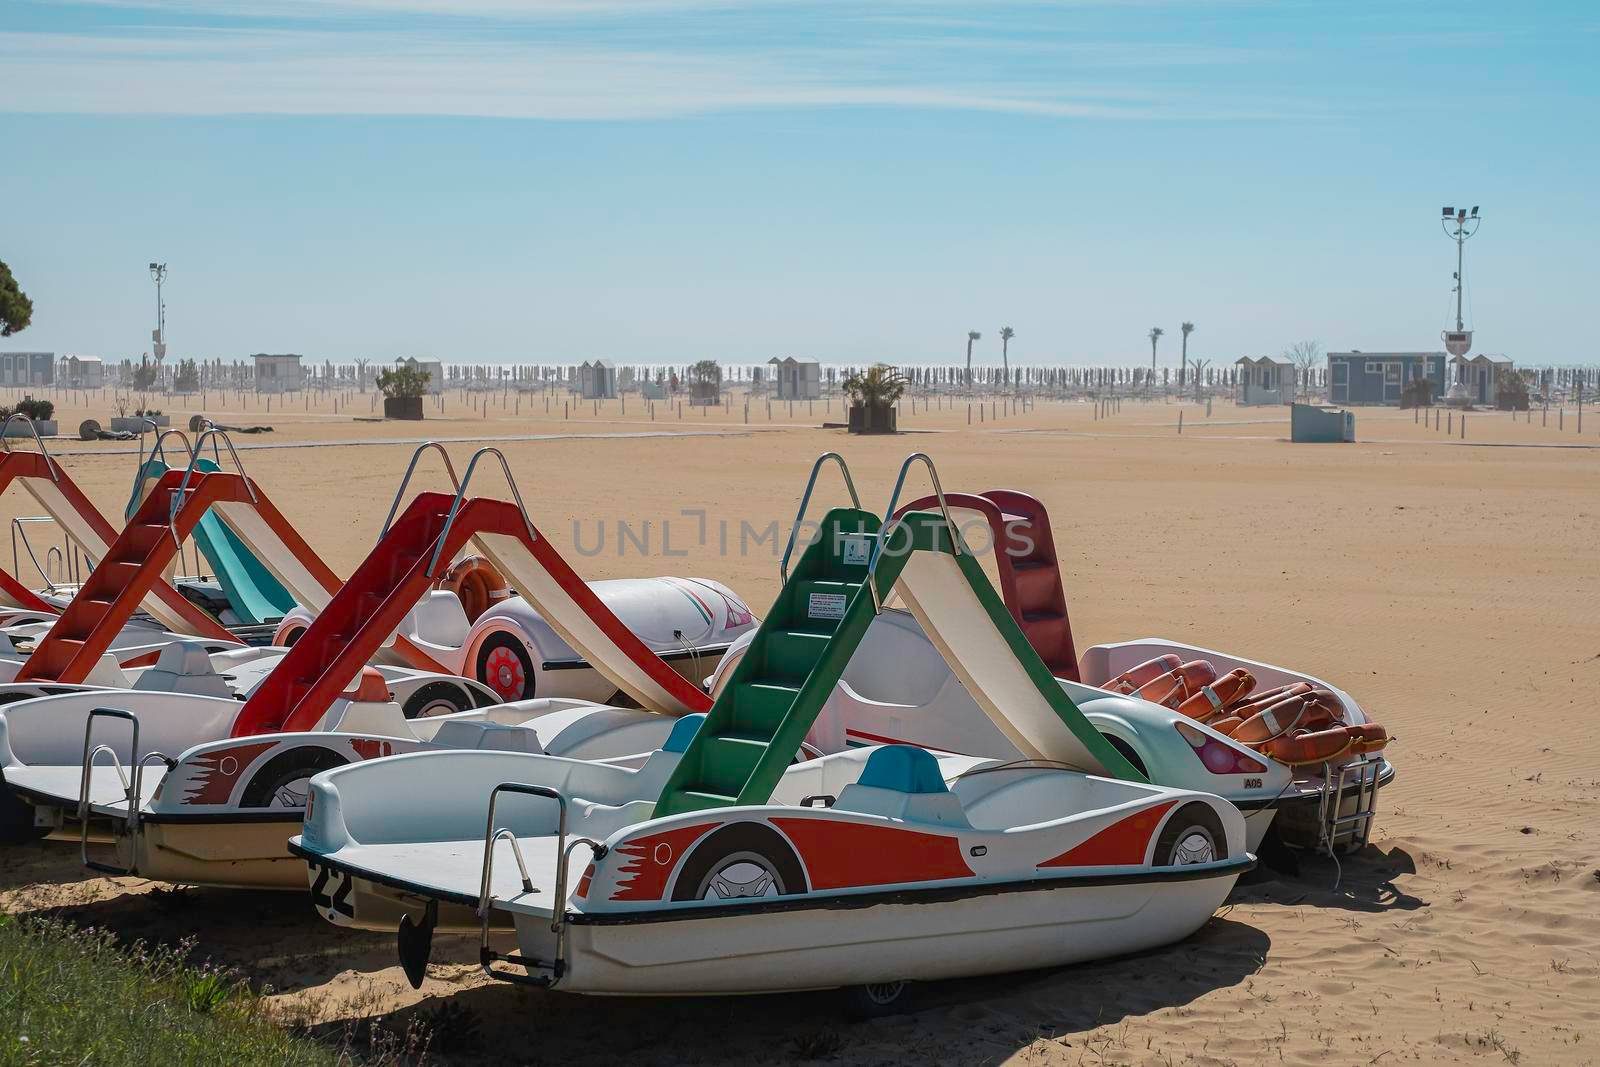 catamarans with an entertaining slide on the beach by Annavish